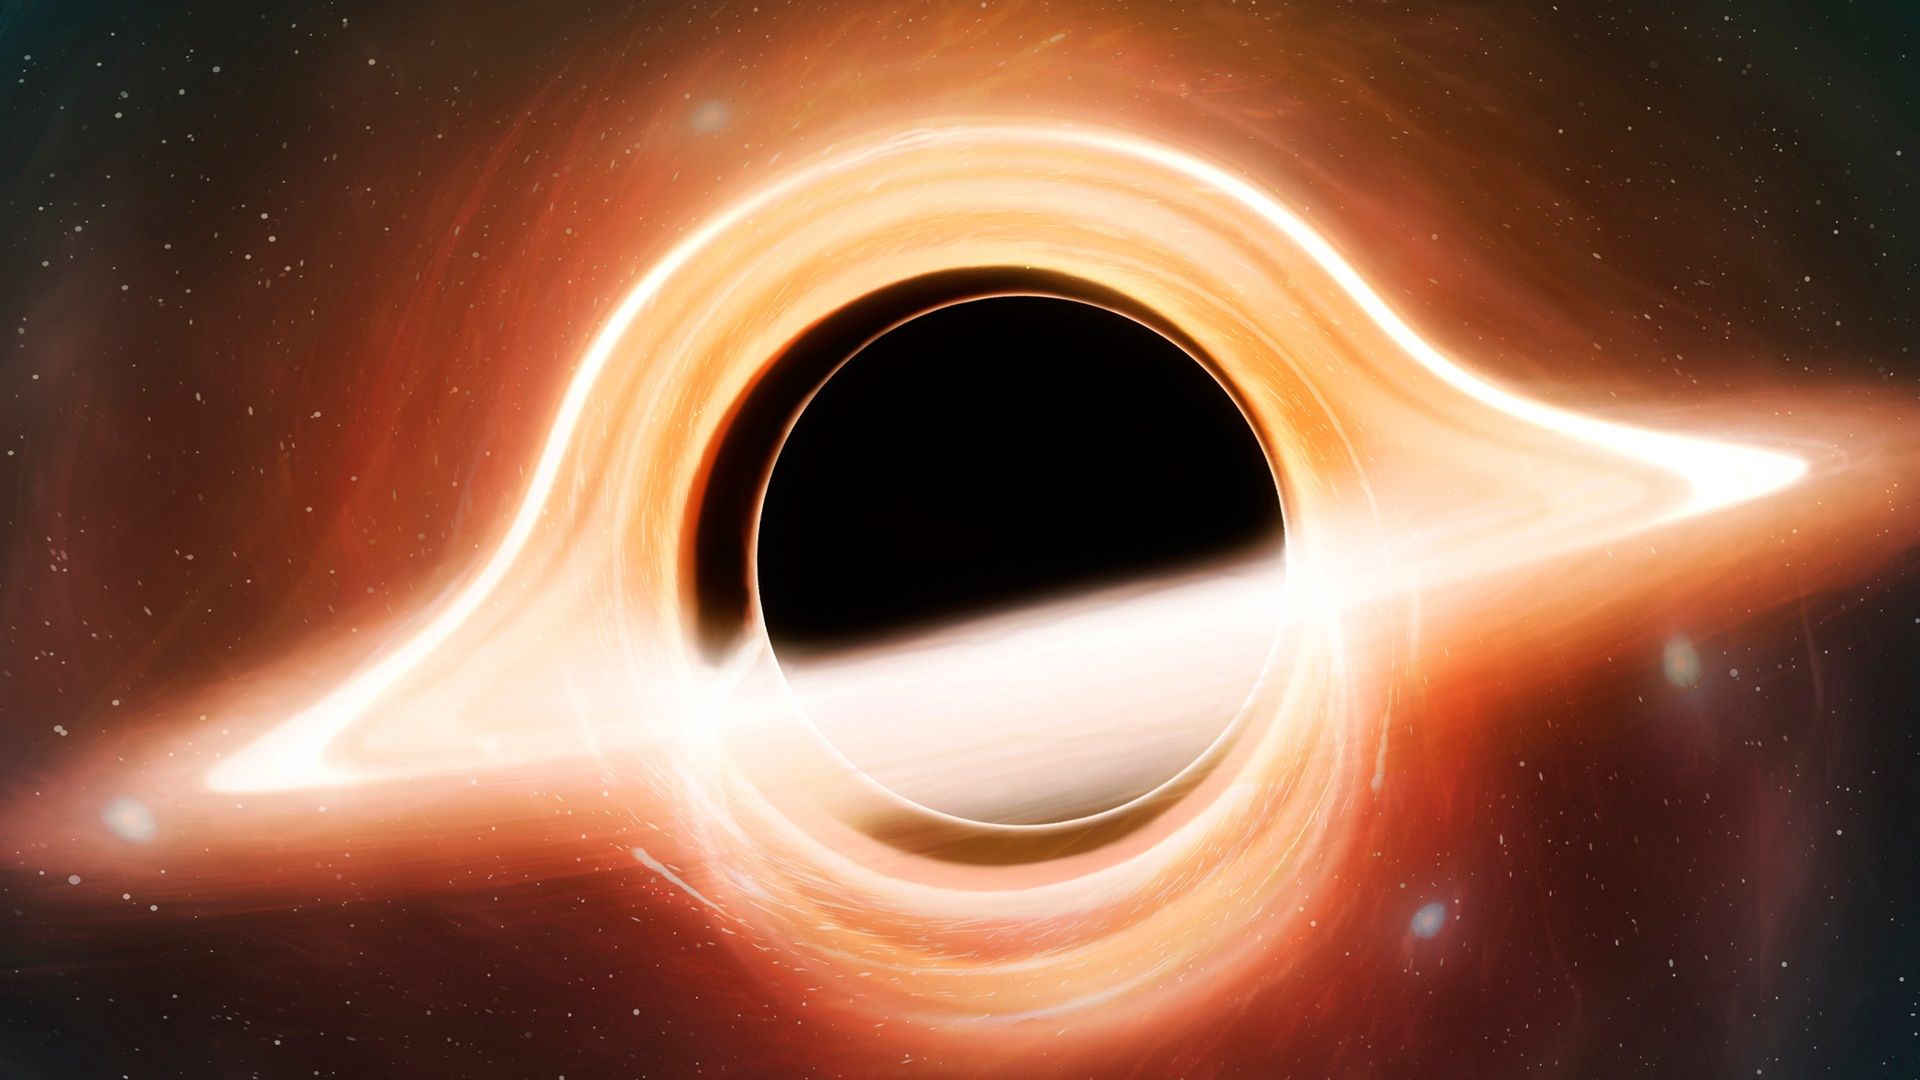 czarna-dziura-rekordowo-blisko-ziemi-wyj-tkowe-odkrycie